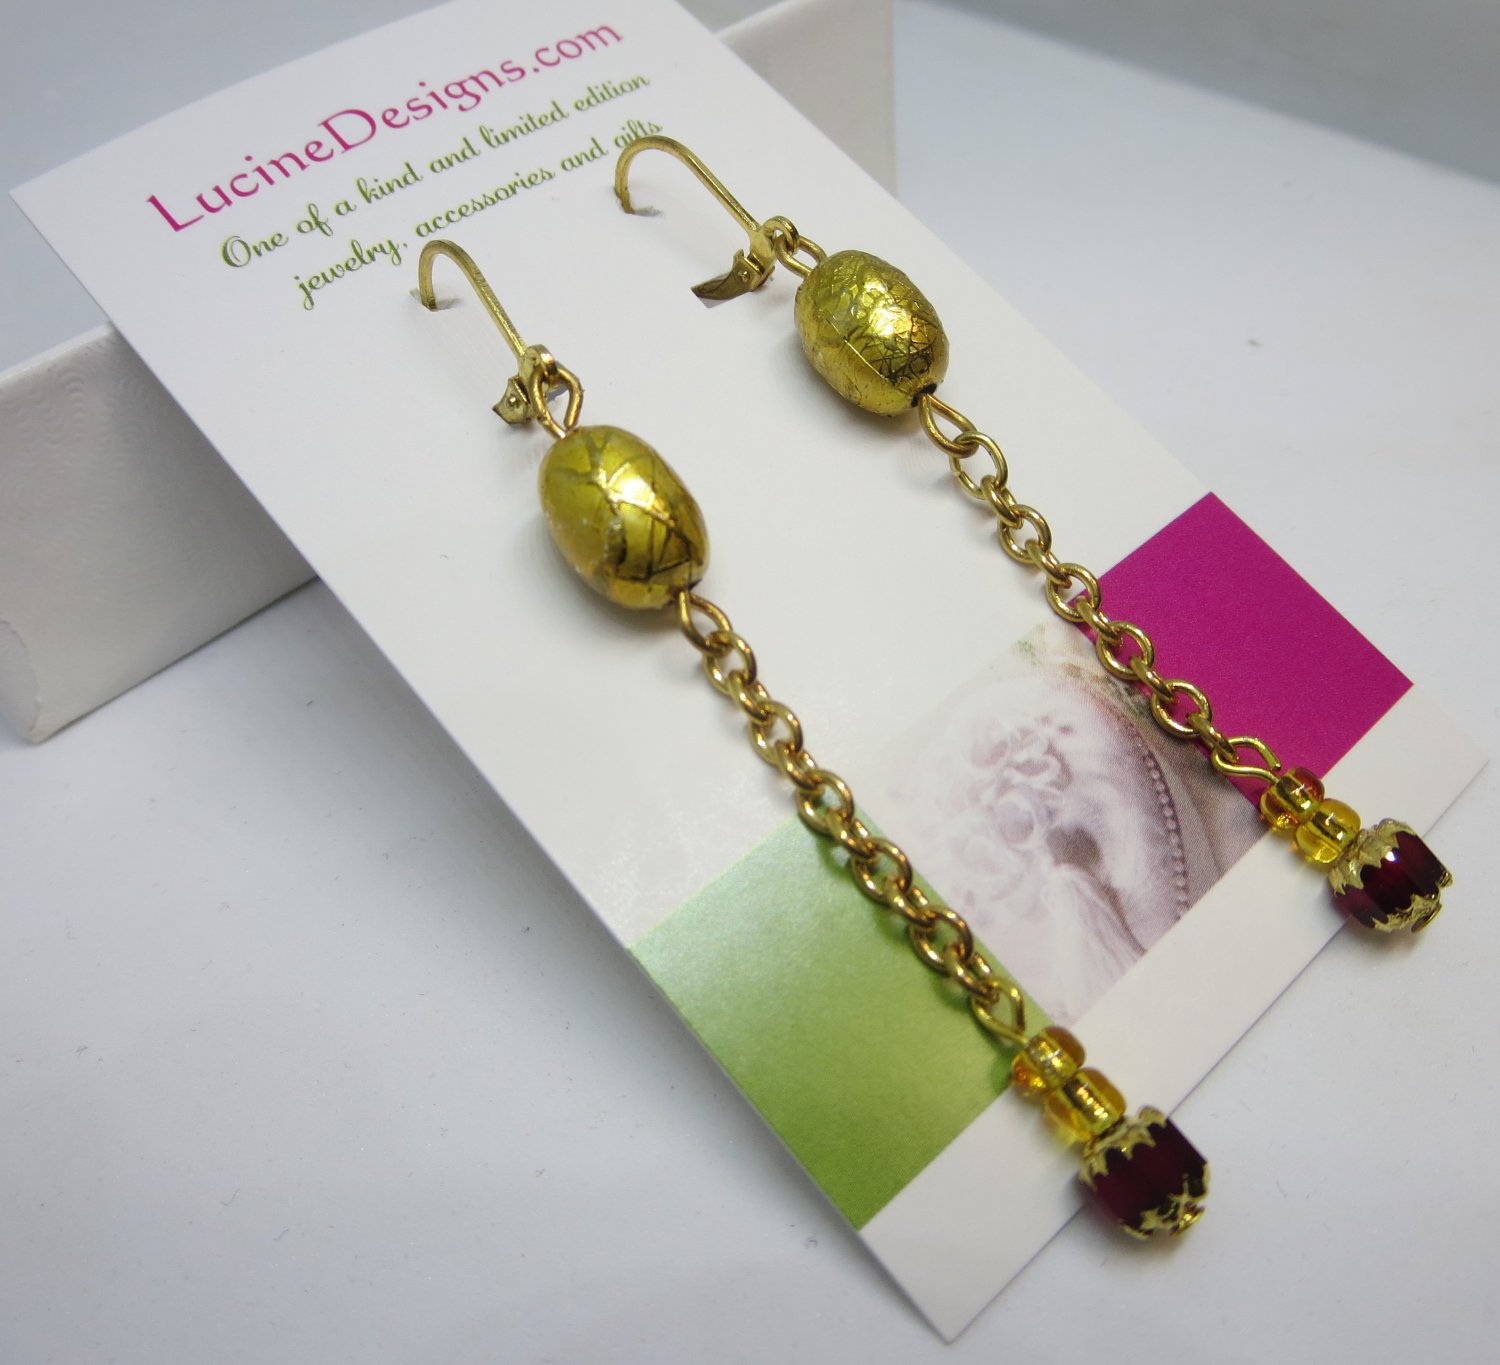 Gold linear earrings, #3609E, long drop boutique earrings, Lucine Designs